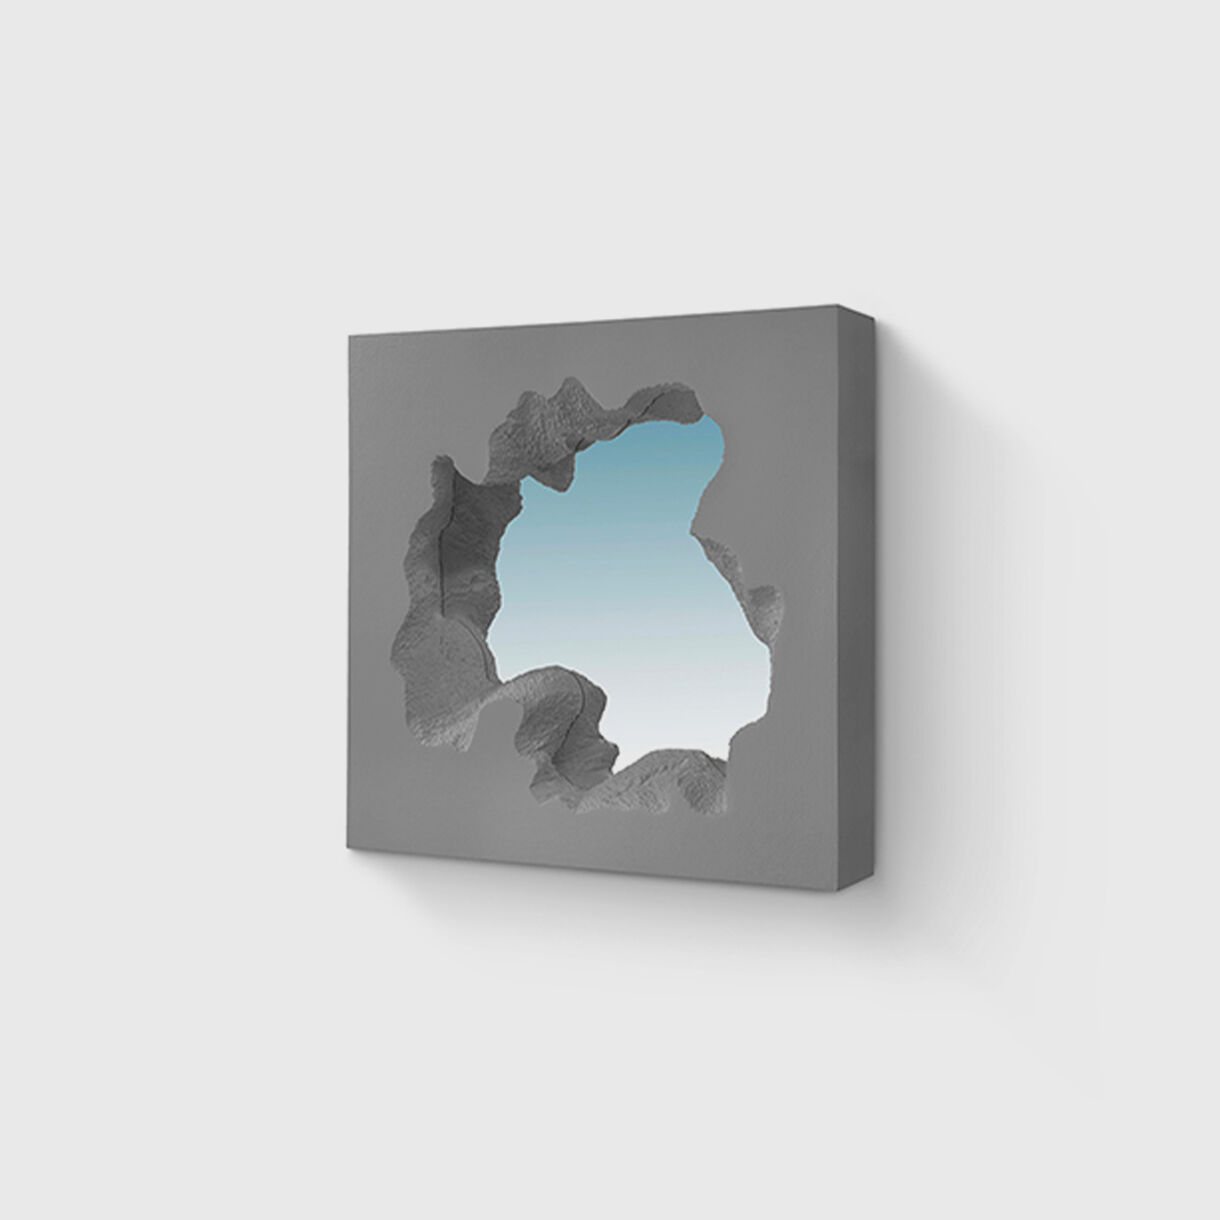 Broken Square Mirror, Grey